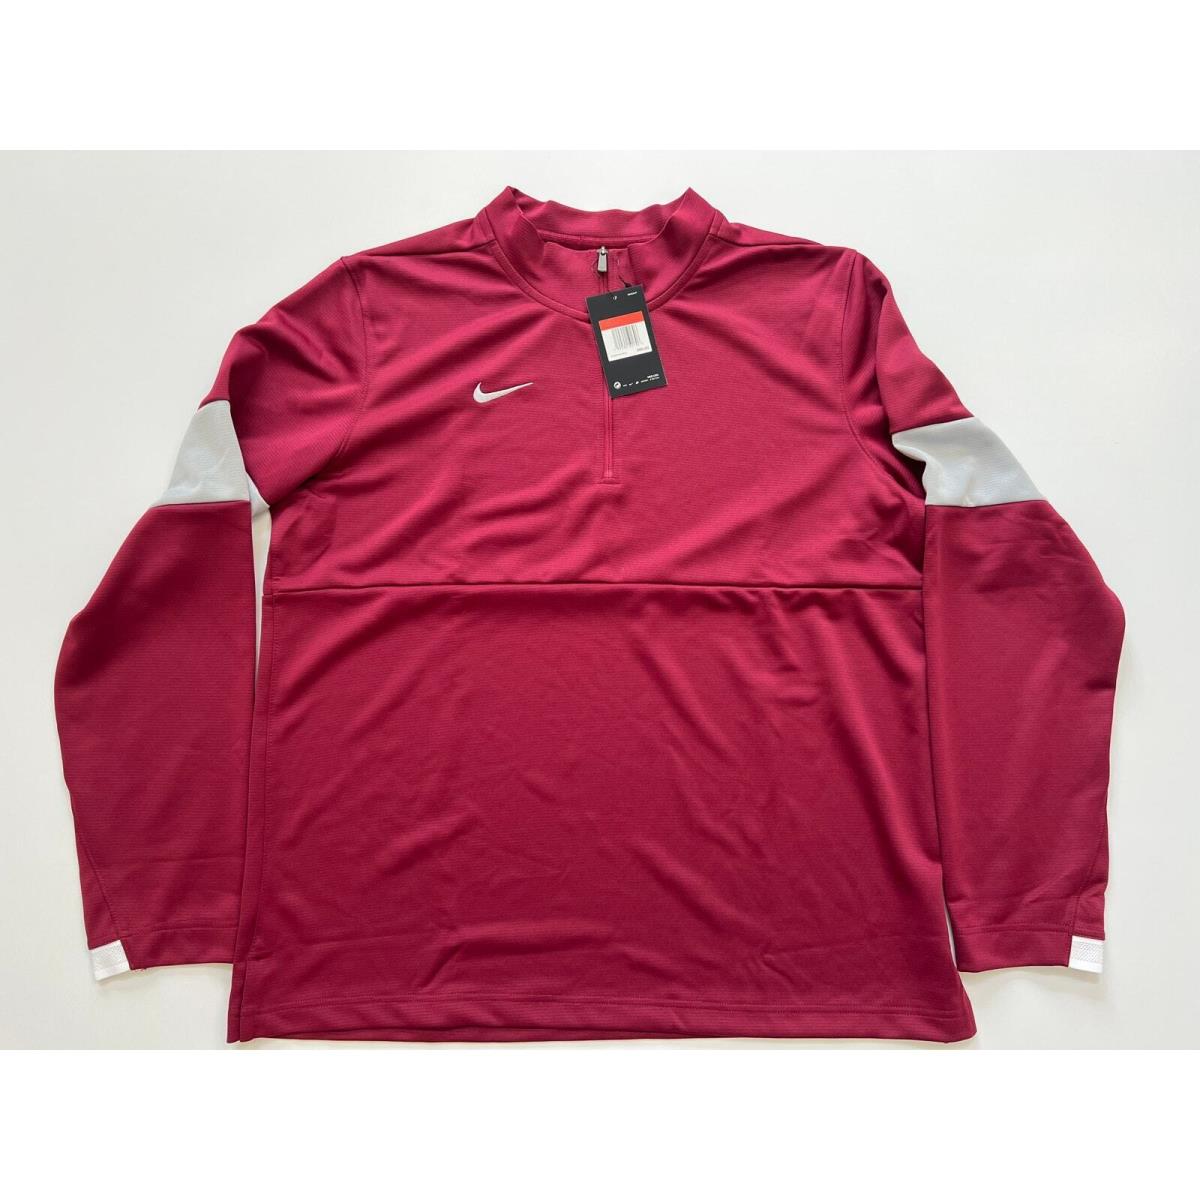 Nike Dri Fit Therma 1/4 Crimson Pullover Men s AO5919-692 Size L